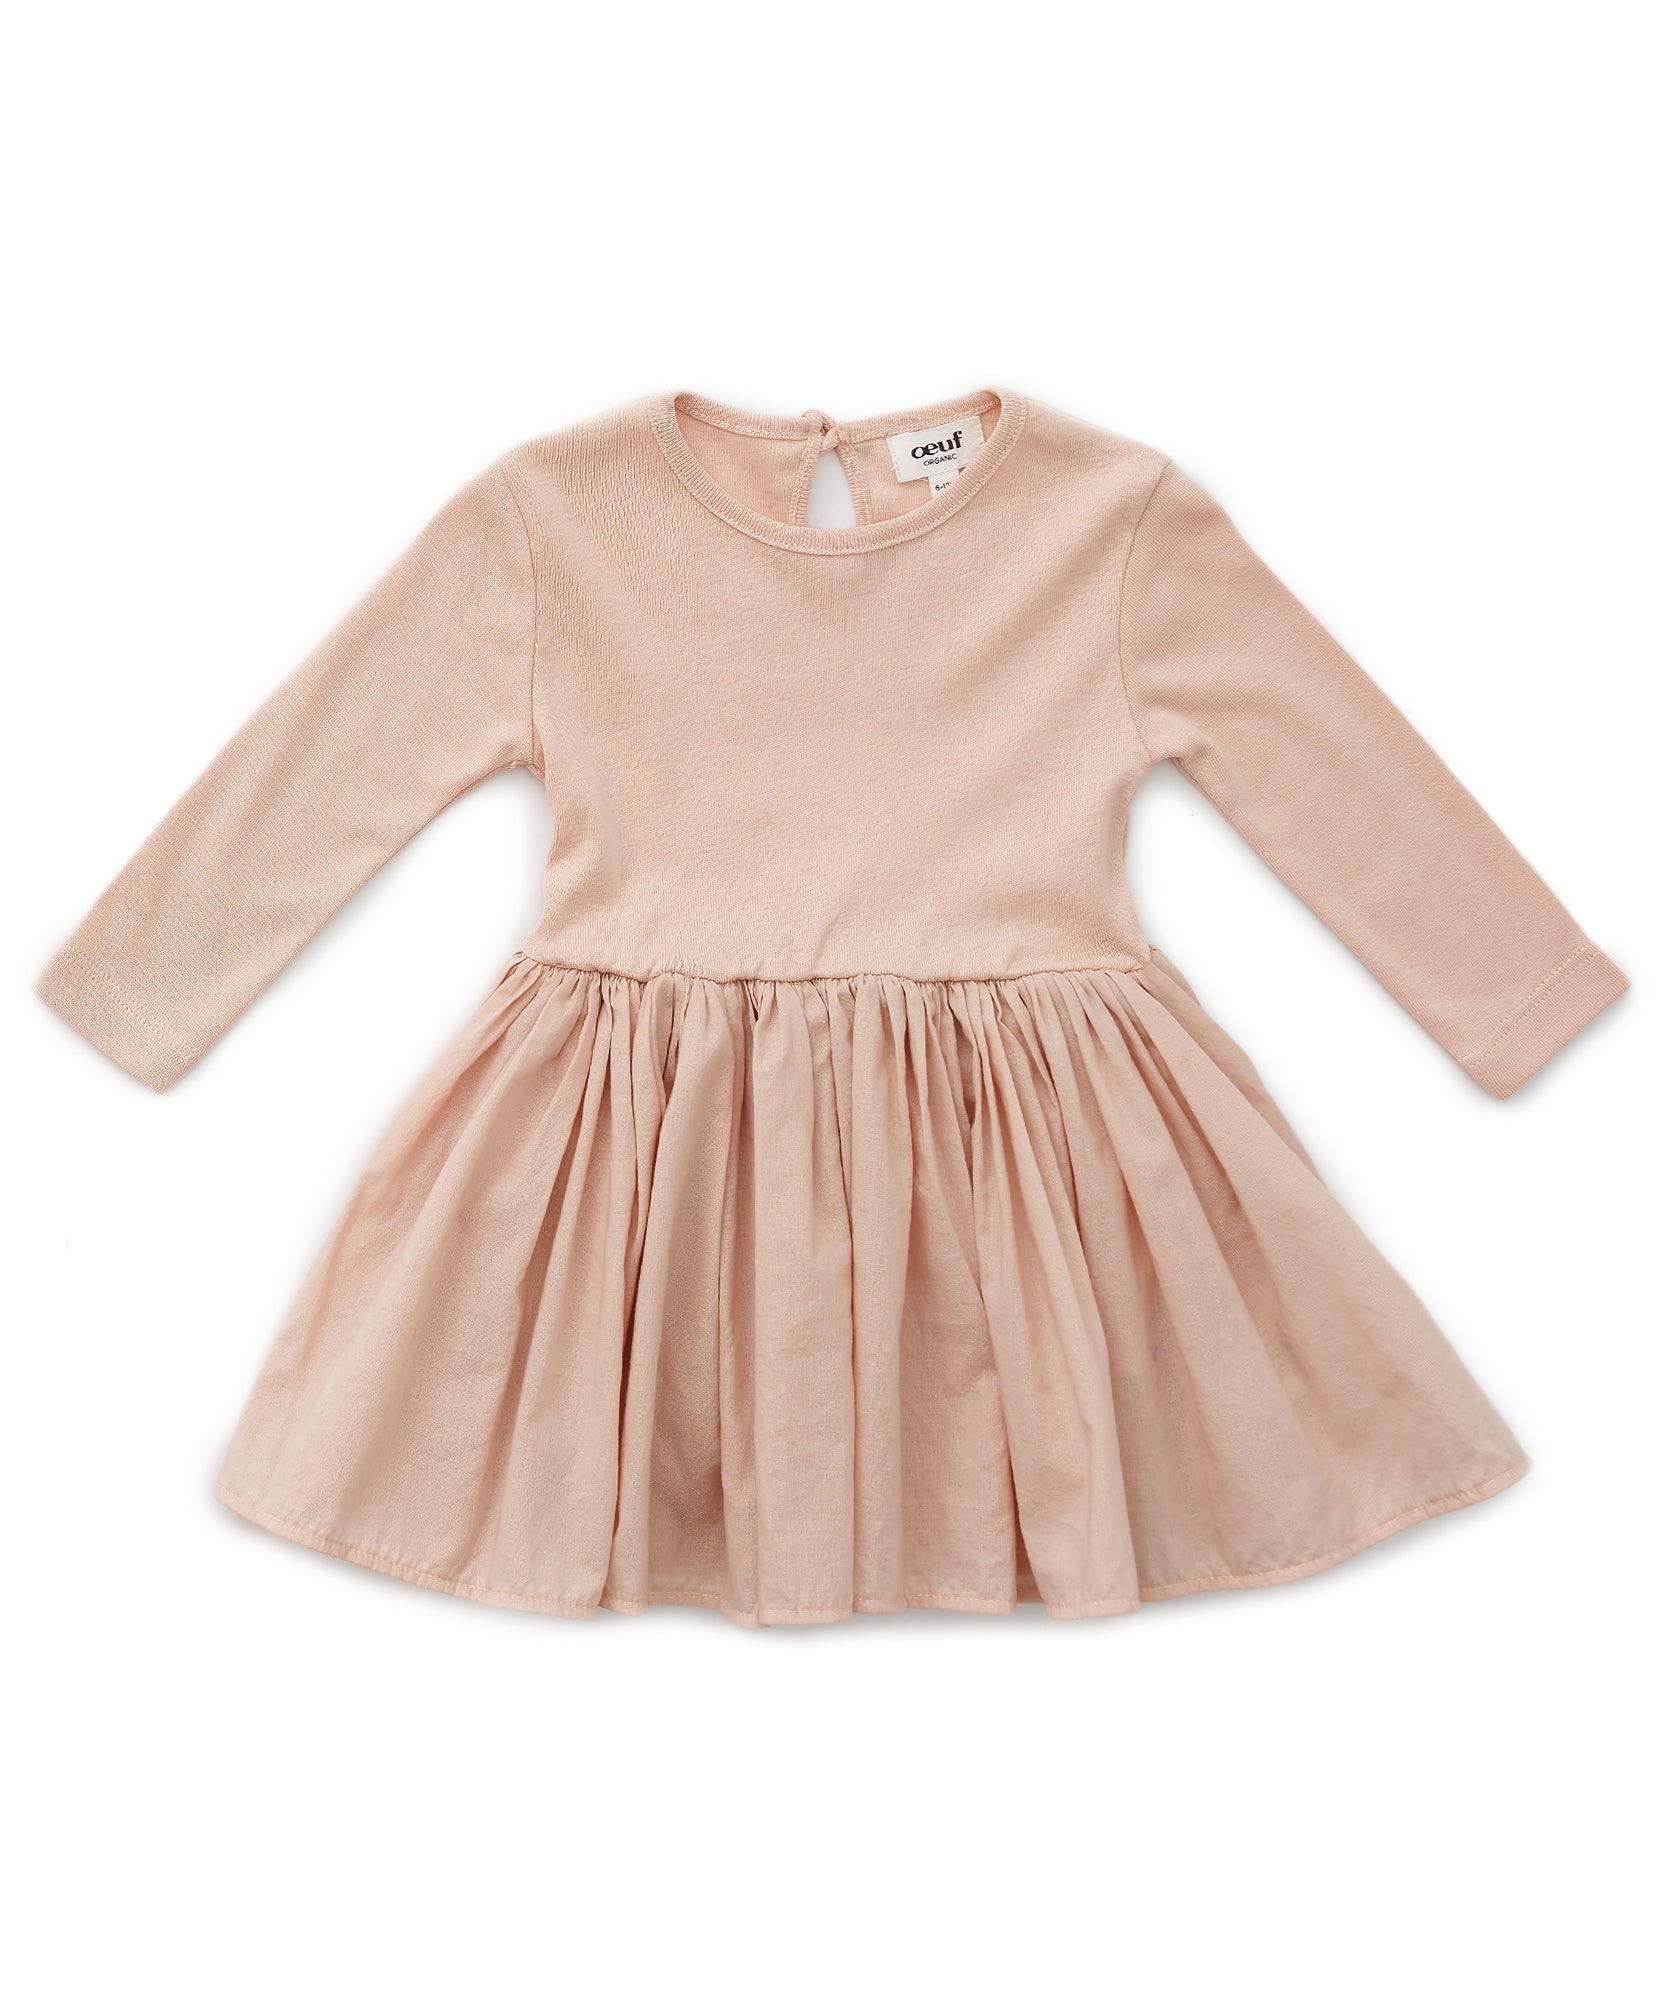 Oeuf Flouncy Baby Dress - Warm Blush